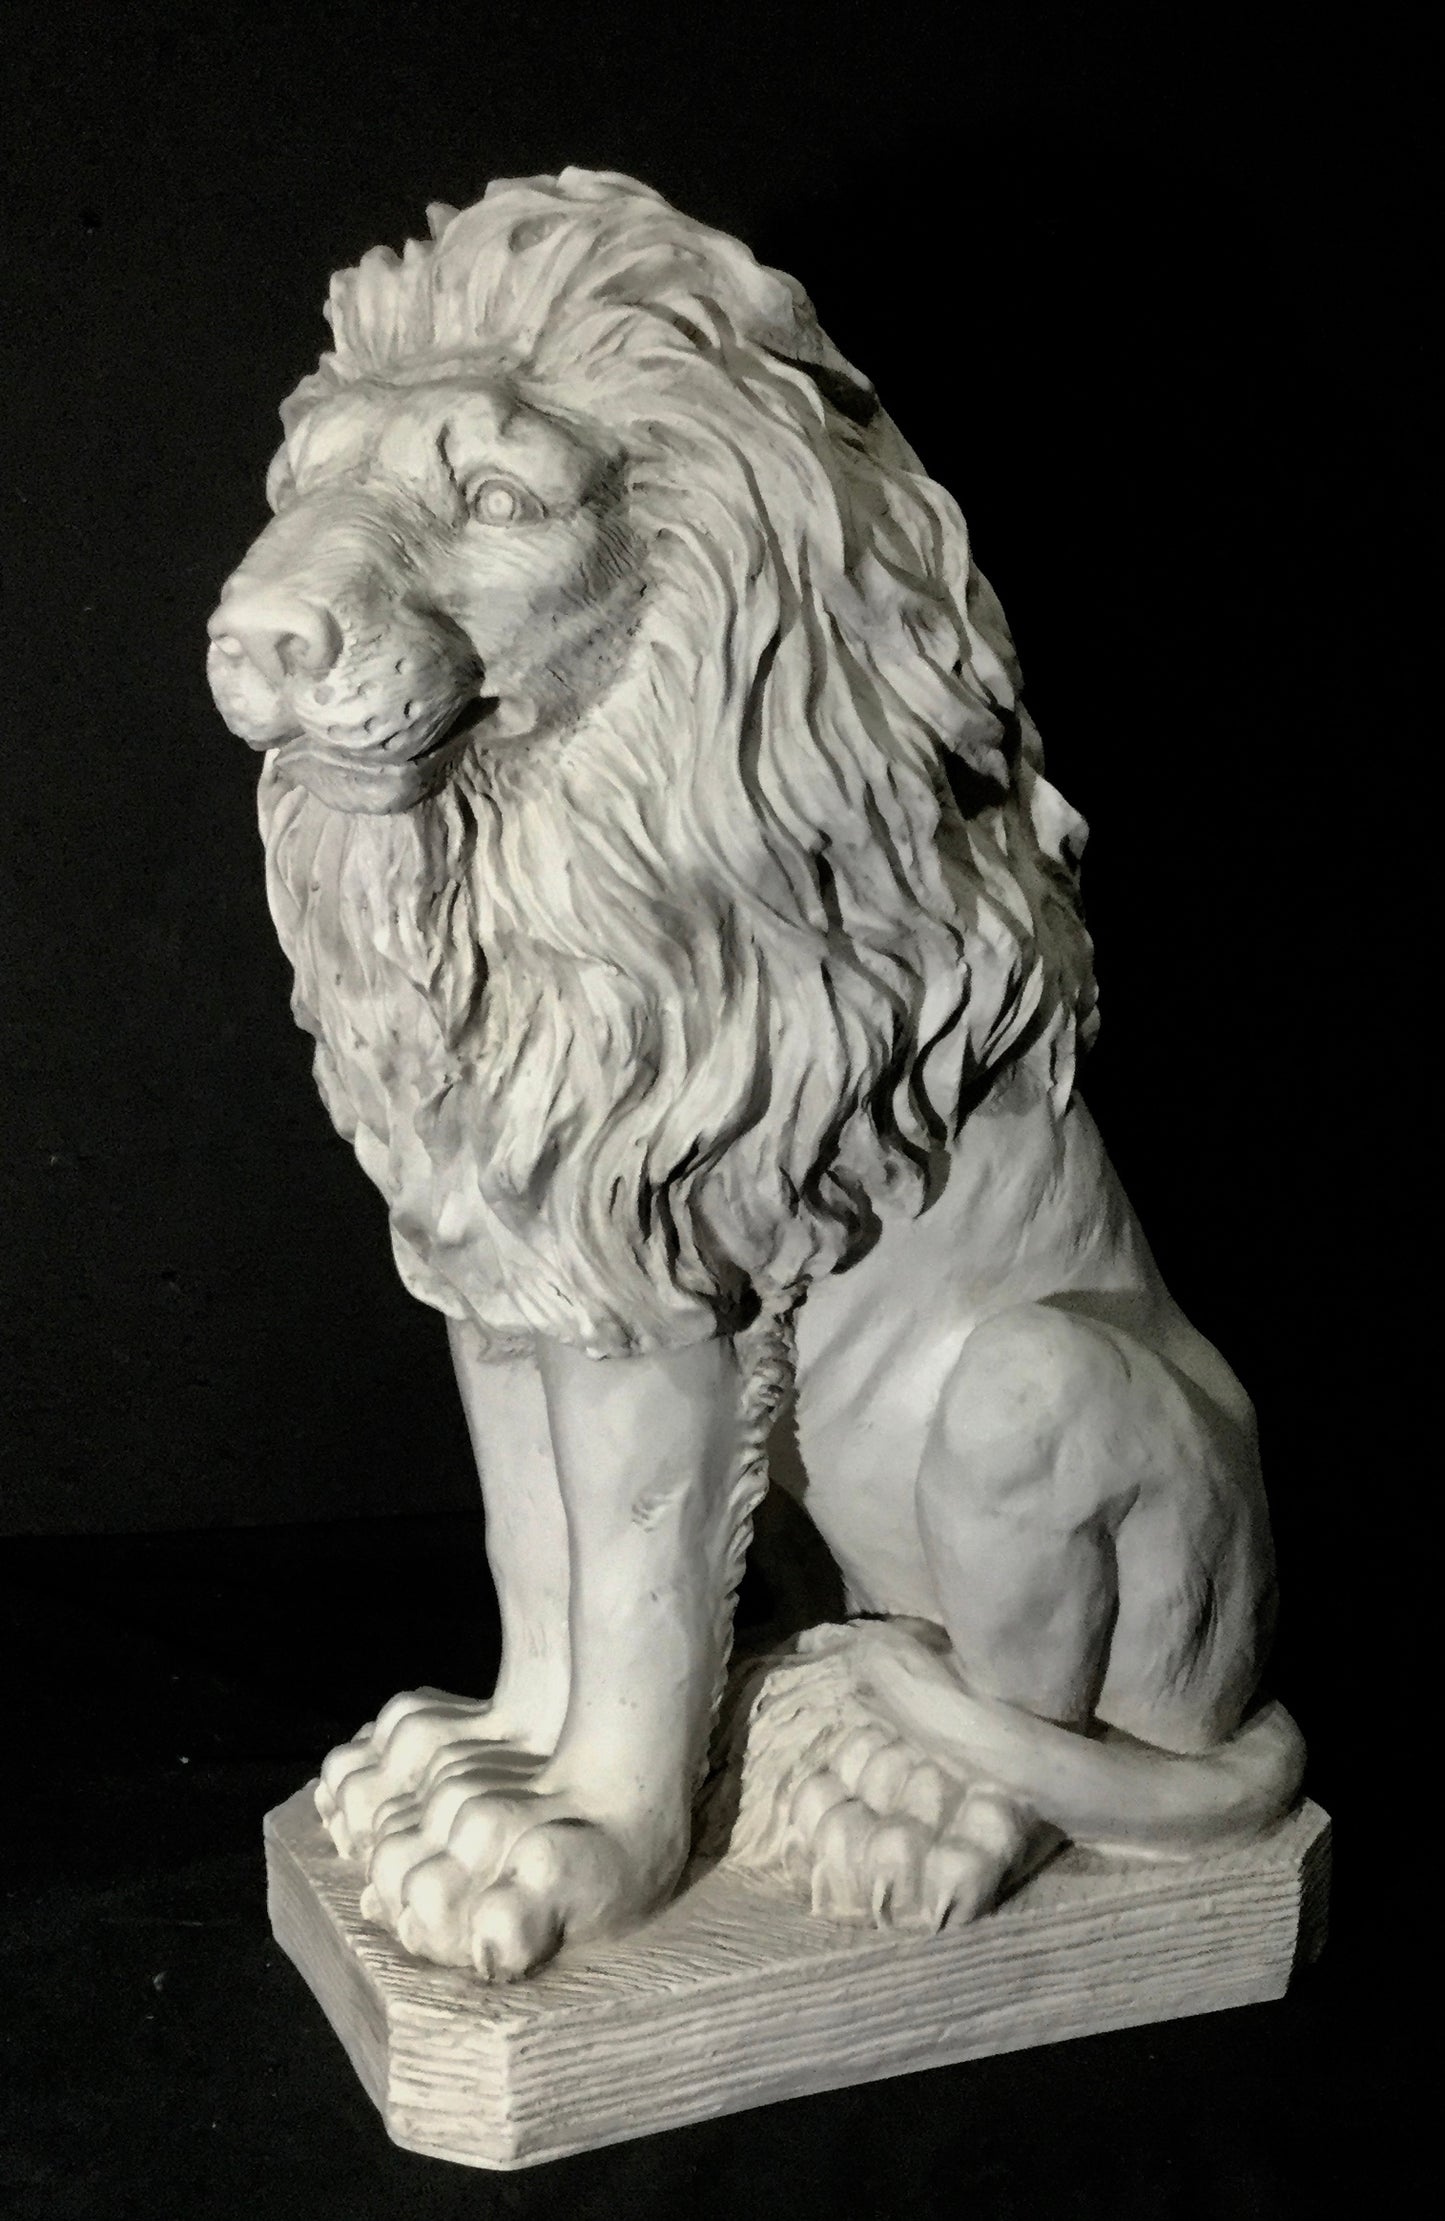 Lion Male